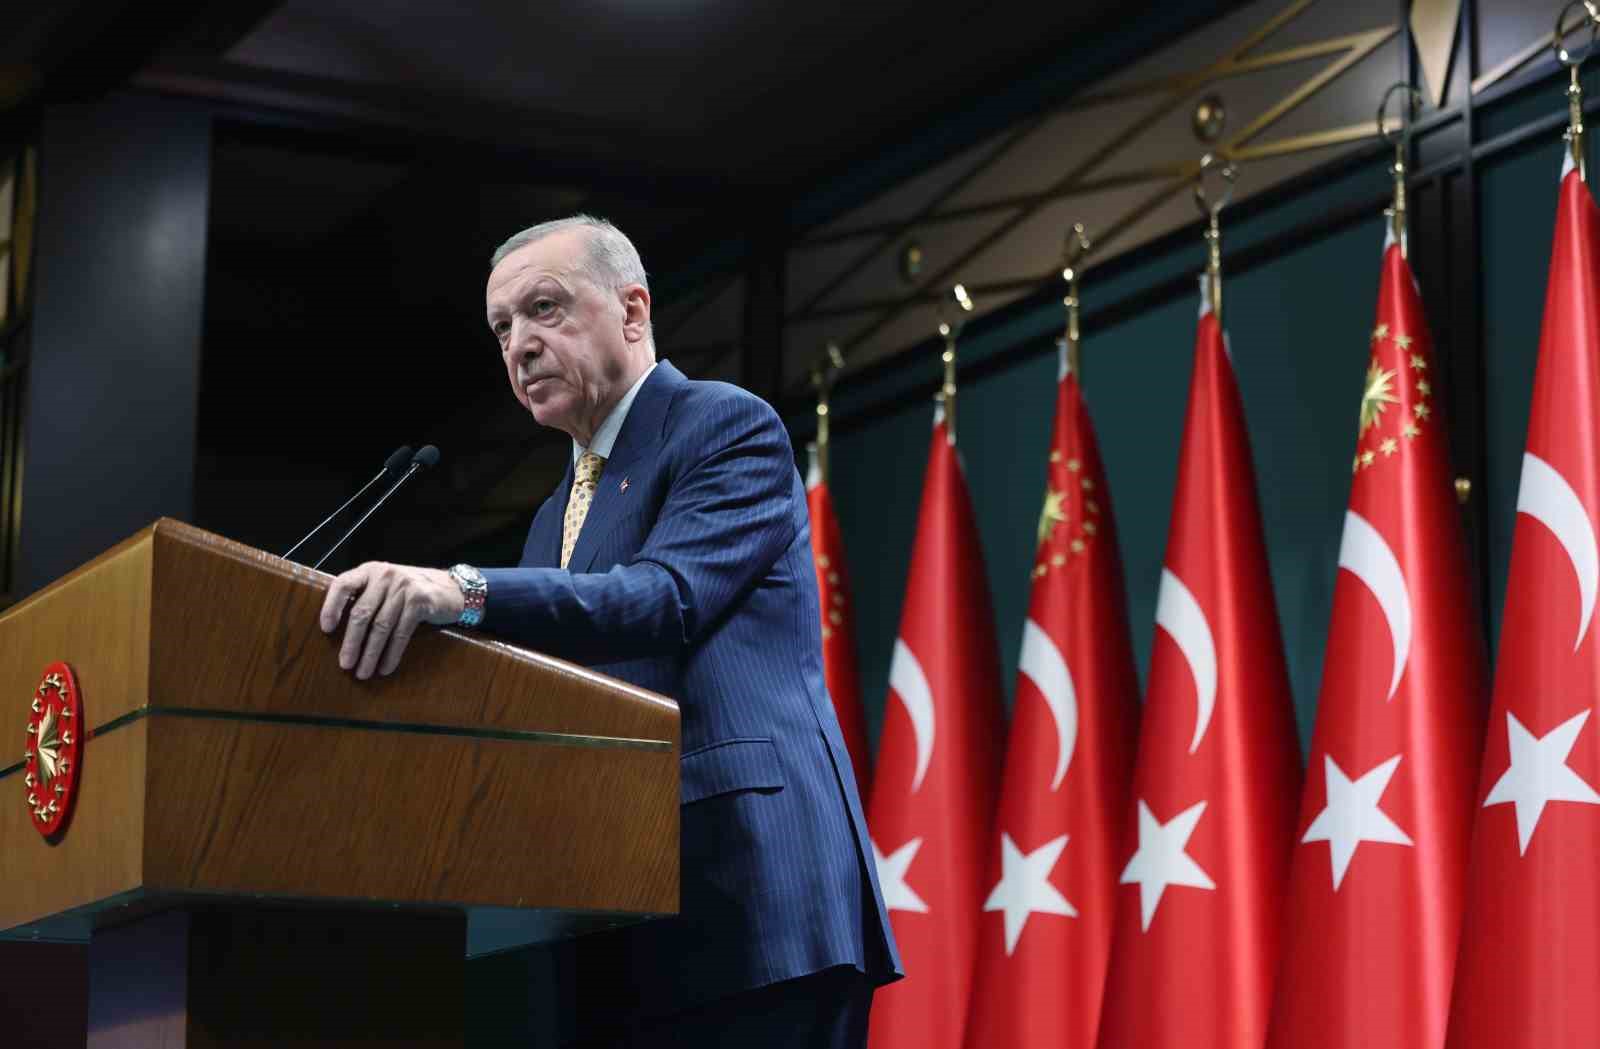 Cumhurbaşkanı Erdoğan: ”Türkiye ne pahasına olursa olsun güney sınırlarında bir teröristan kurulmasına müsaade etmeyecektir”